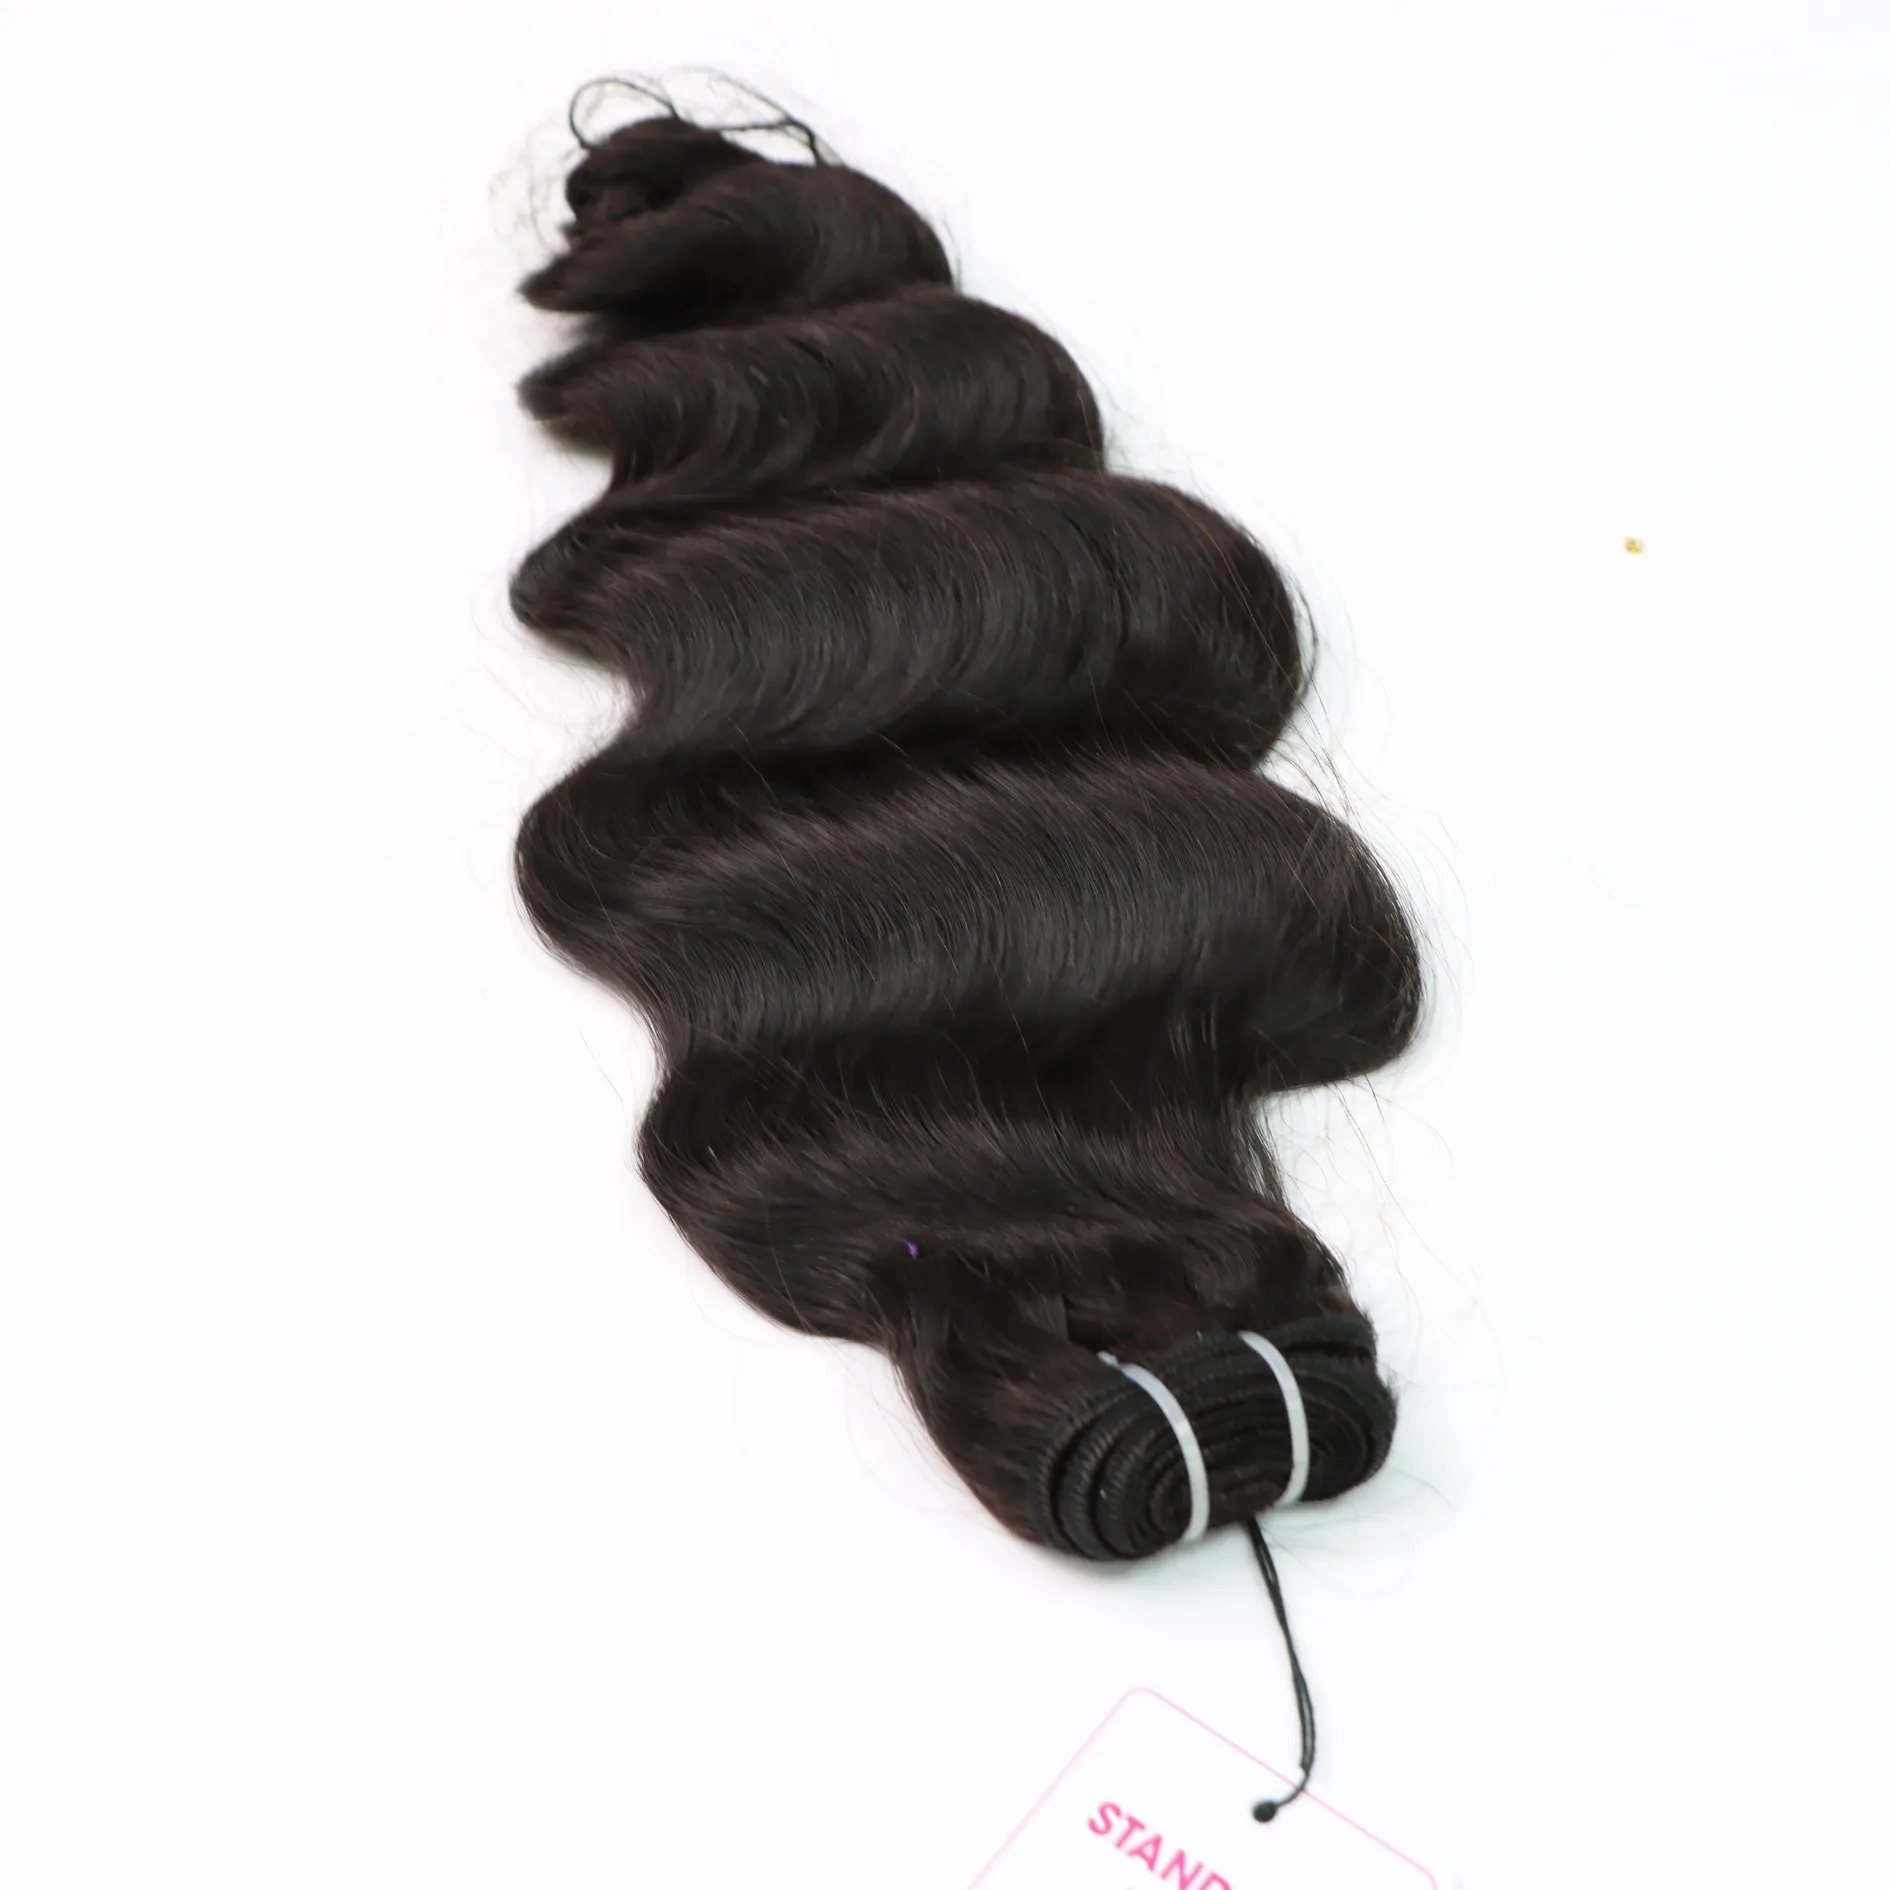 Оптовая продажа, натуральные вьетнамские человеческие волосы, наращивание натурального цвета, 1 машинка, морская волна с двумя вытянуанными волосами от Luxshine волос